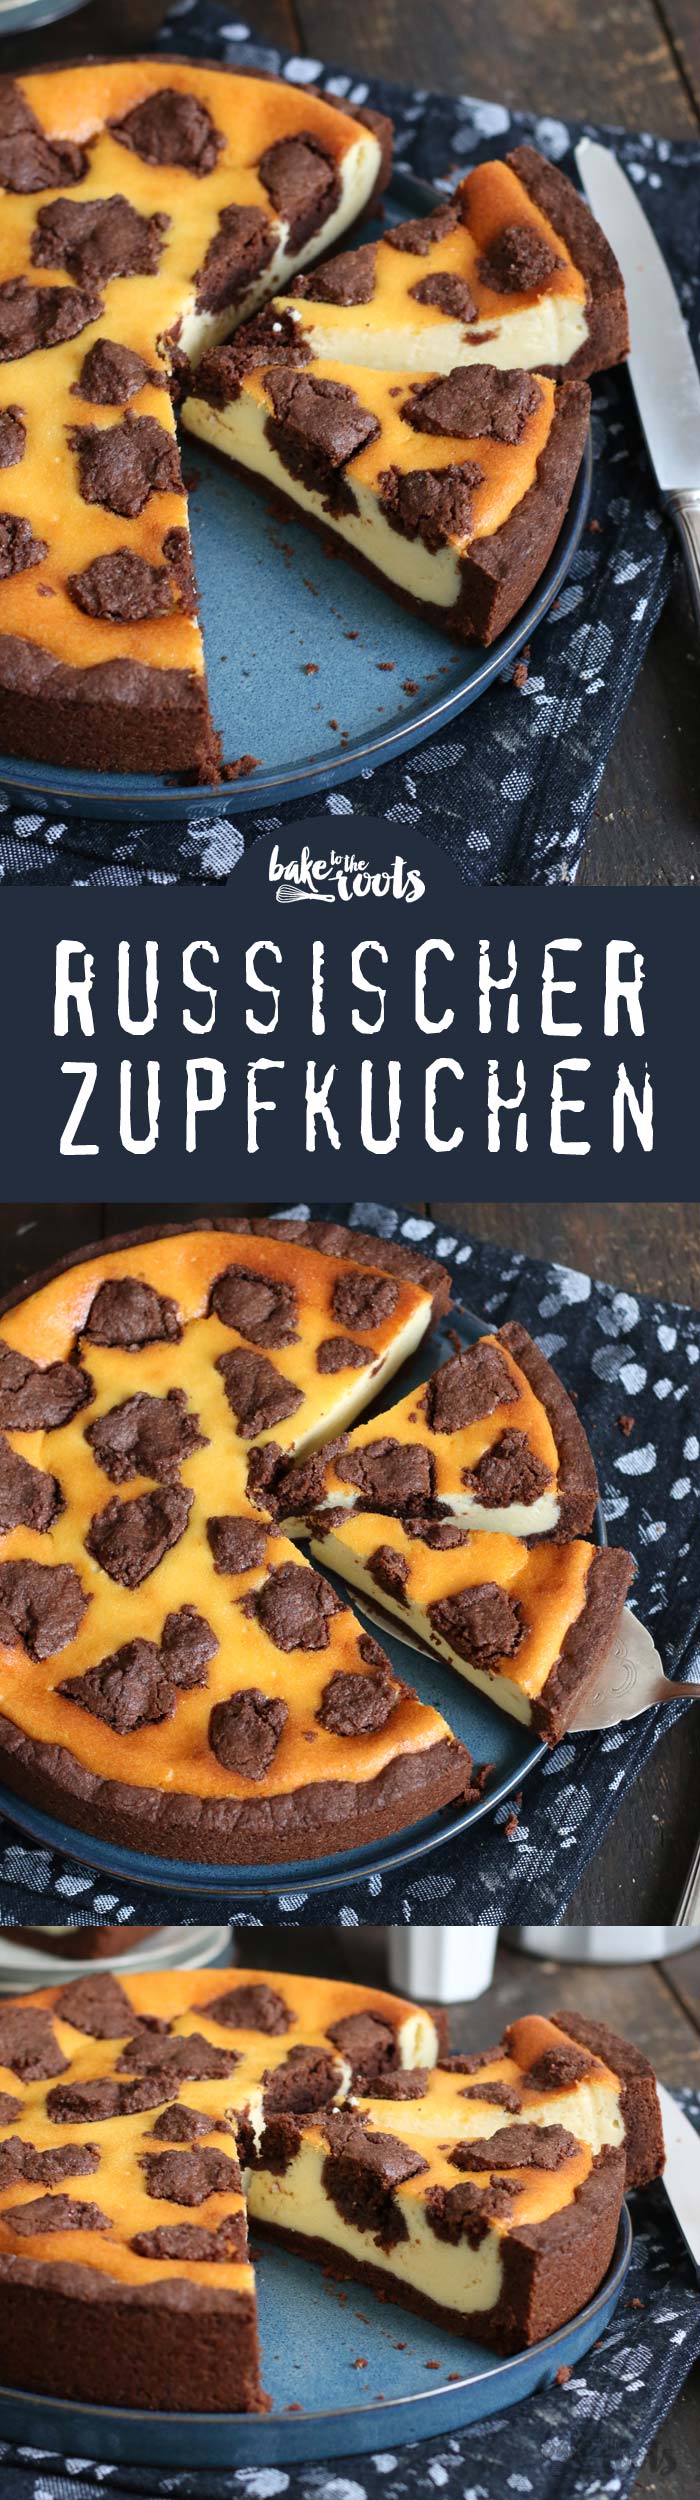 Russischer Zupfkuchen | Bake to the roots